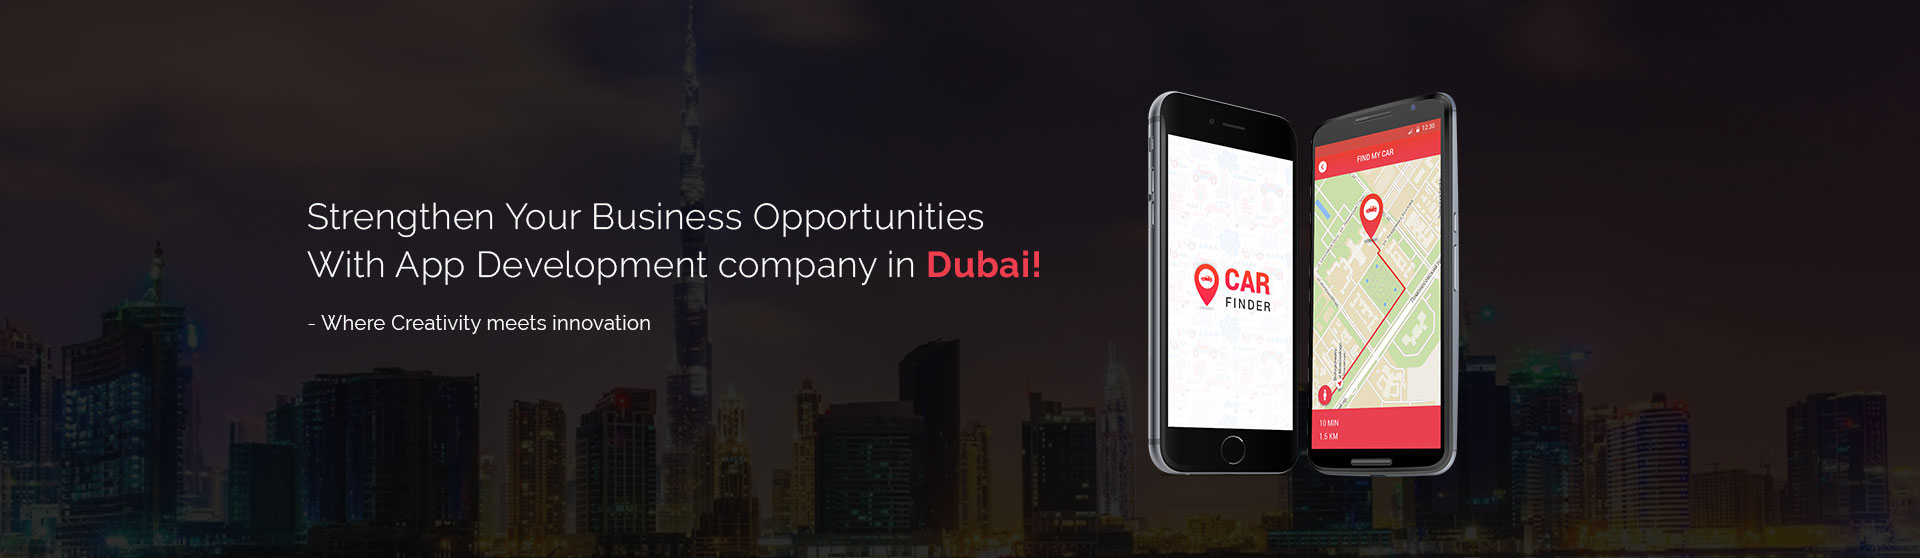 app development company in Dubai